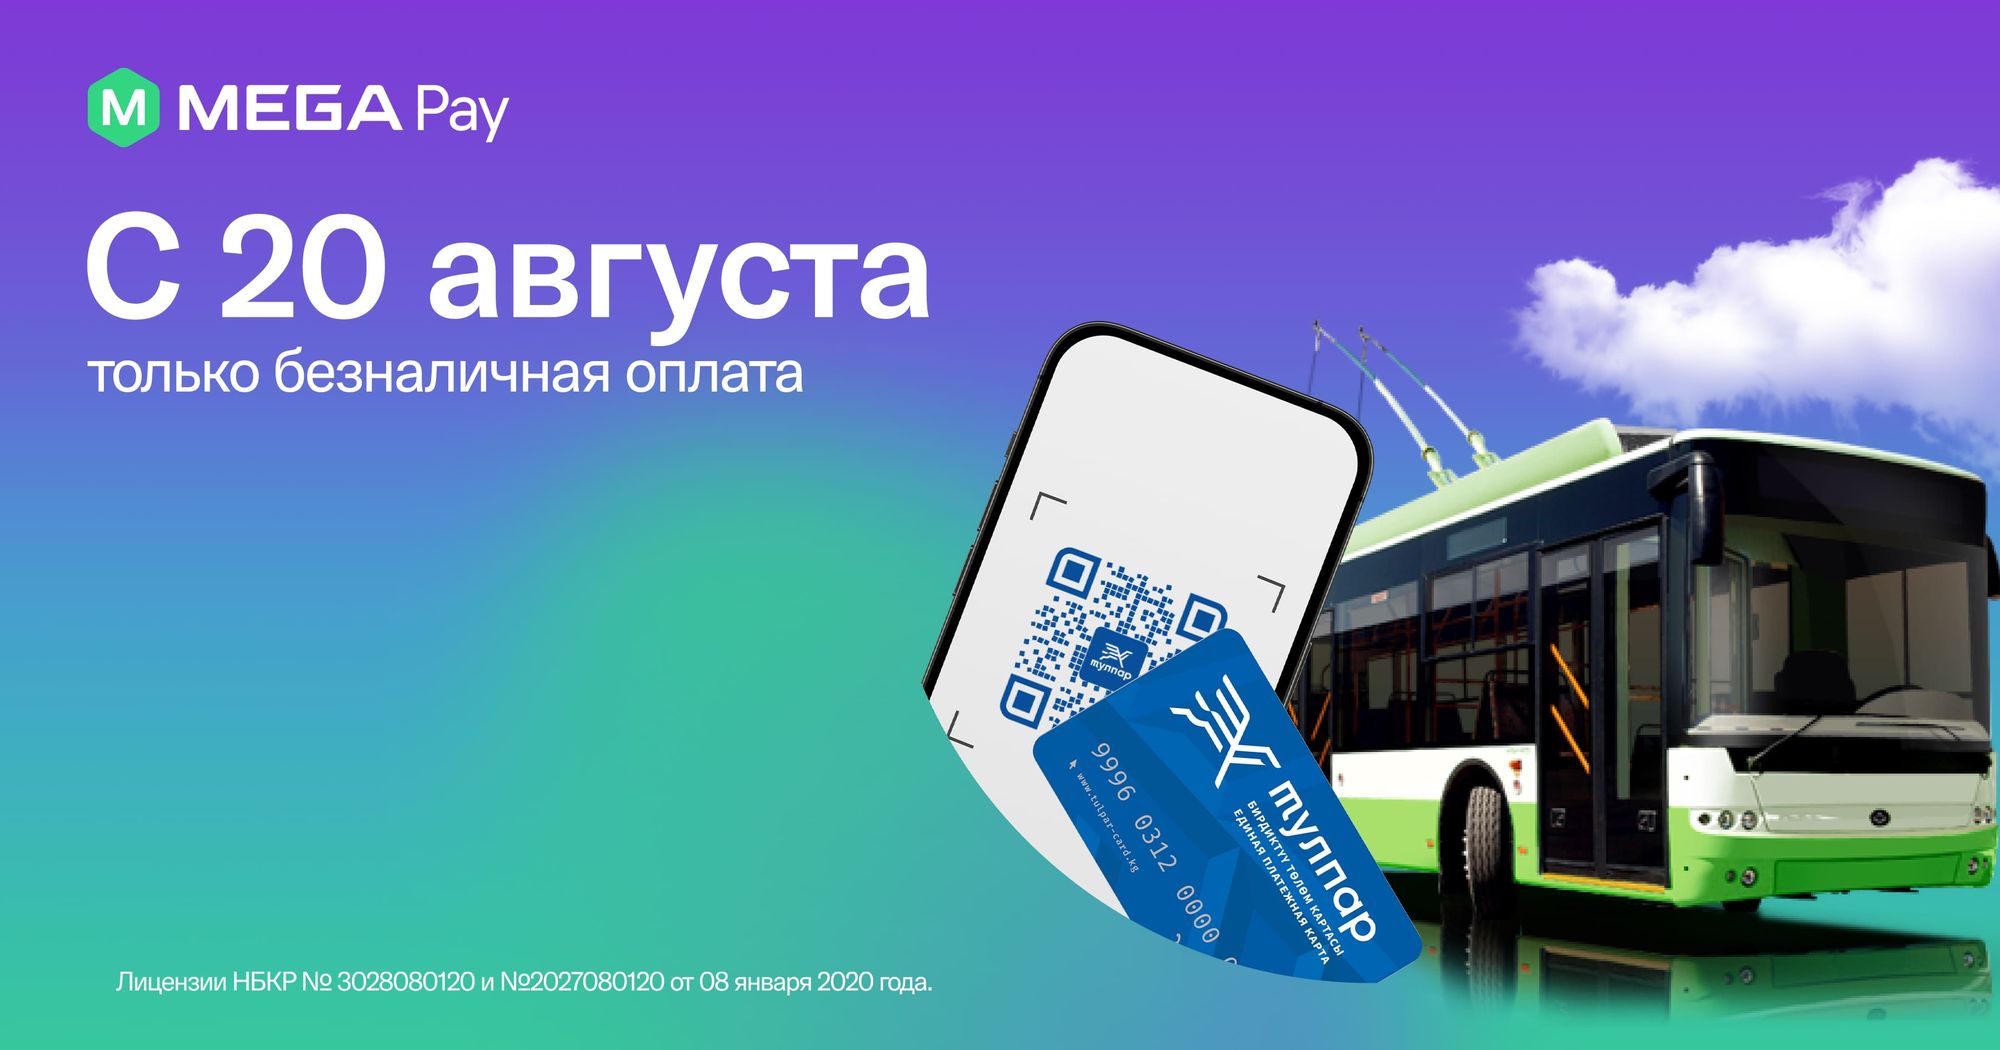 Оплачивайте проезд в муниципальном транспорте безналичным способом с MegaPay